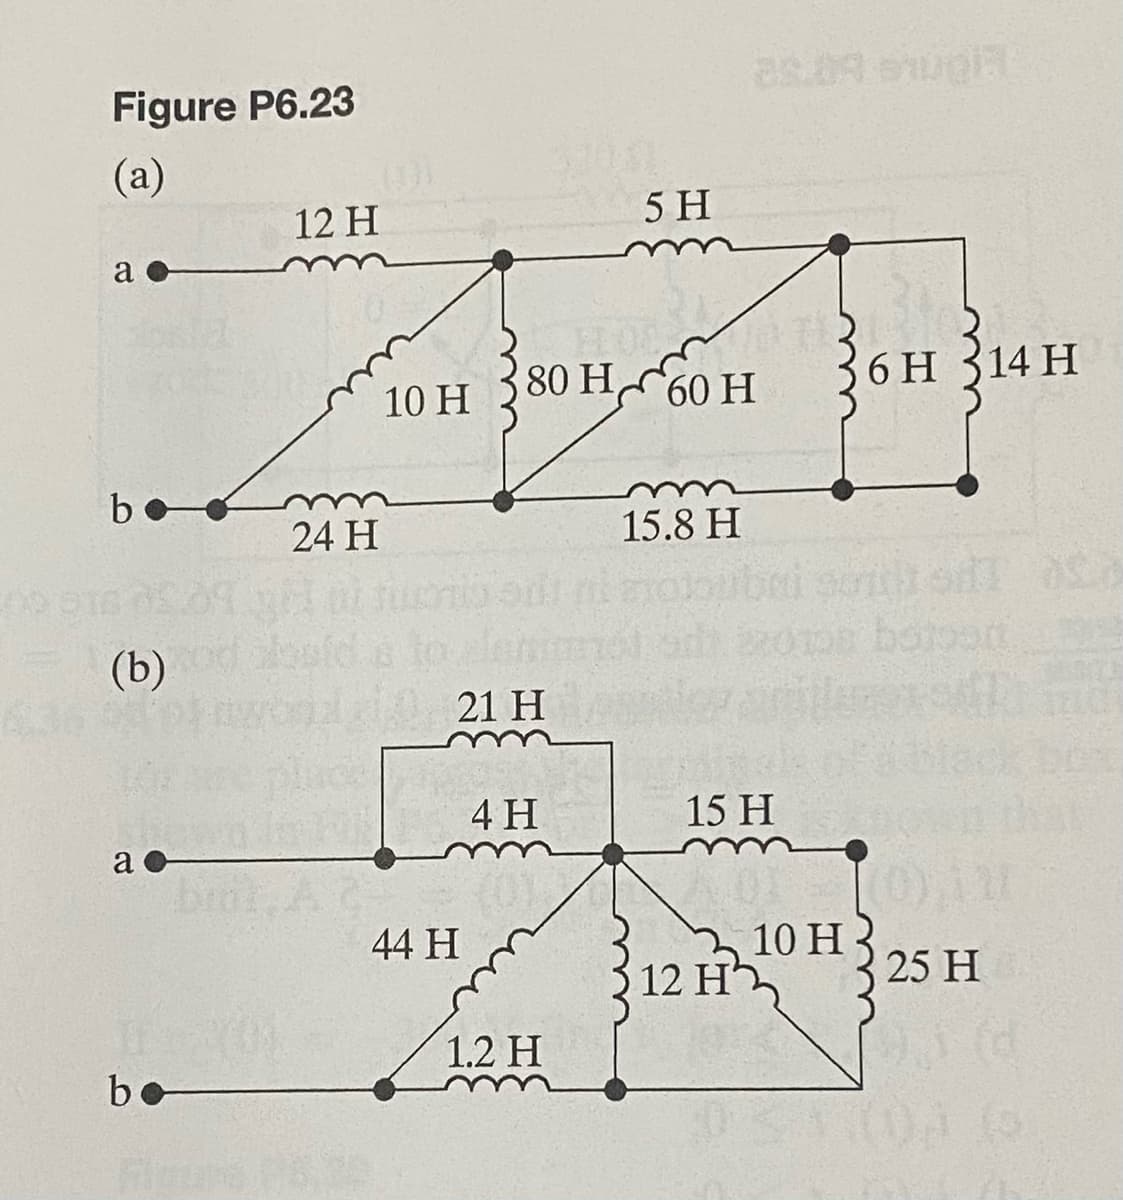 Figure P6.23
(a)
a
b
(b)
a
bo
12 H
24 H
en men
80 H,
10 H
60 H
21 H
44 H
4 H
5 H
1.2 H
15.8 H
25.09. pla
15 H
12 H'
36H 314 H
10 H
25 H
) 3 (d
(5